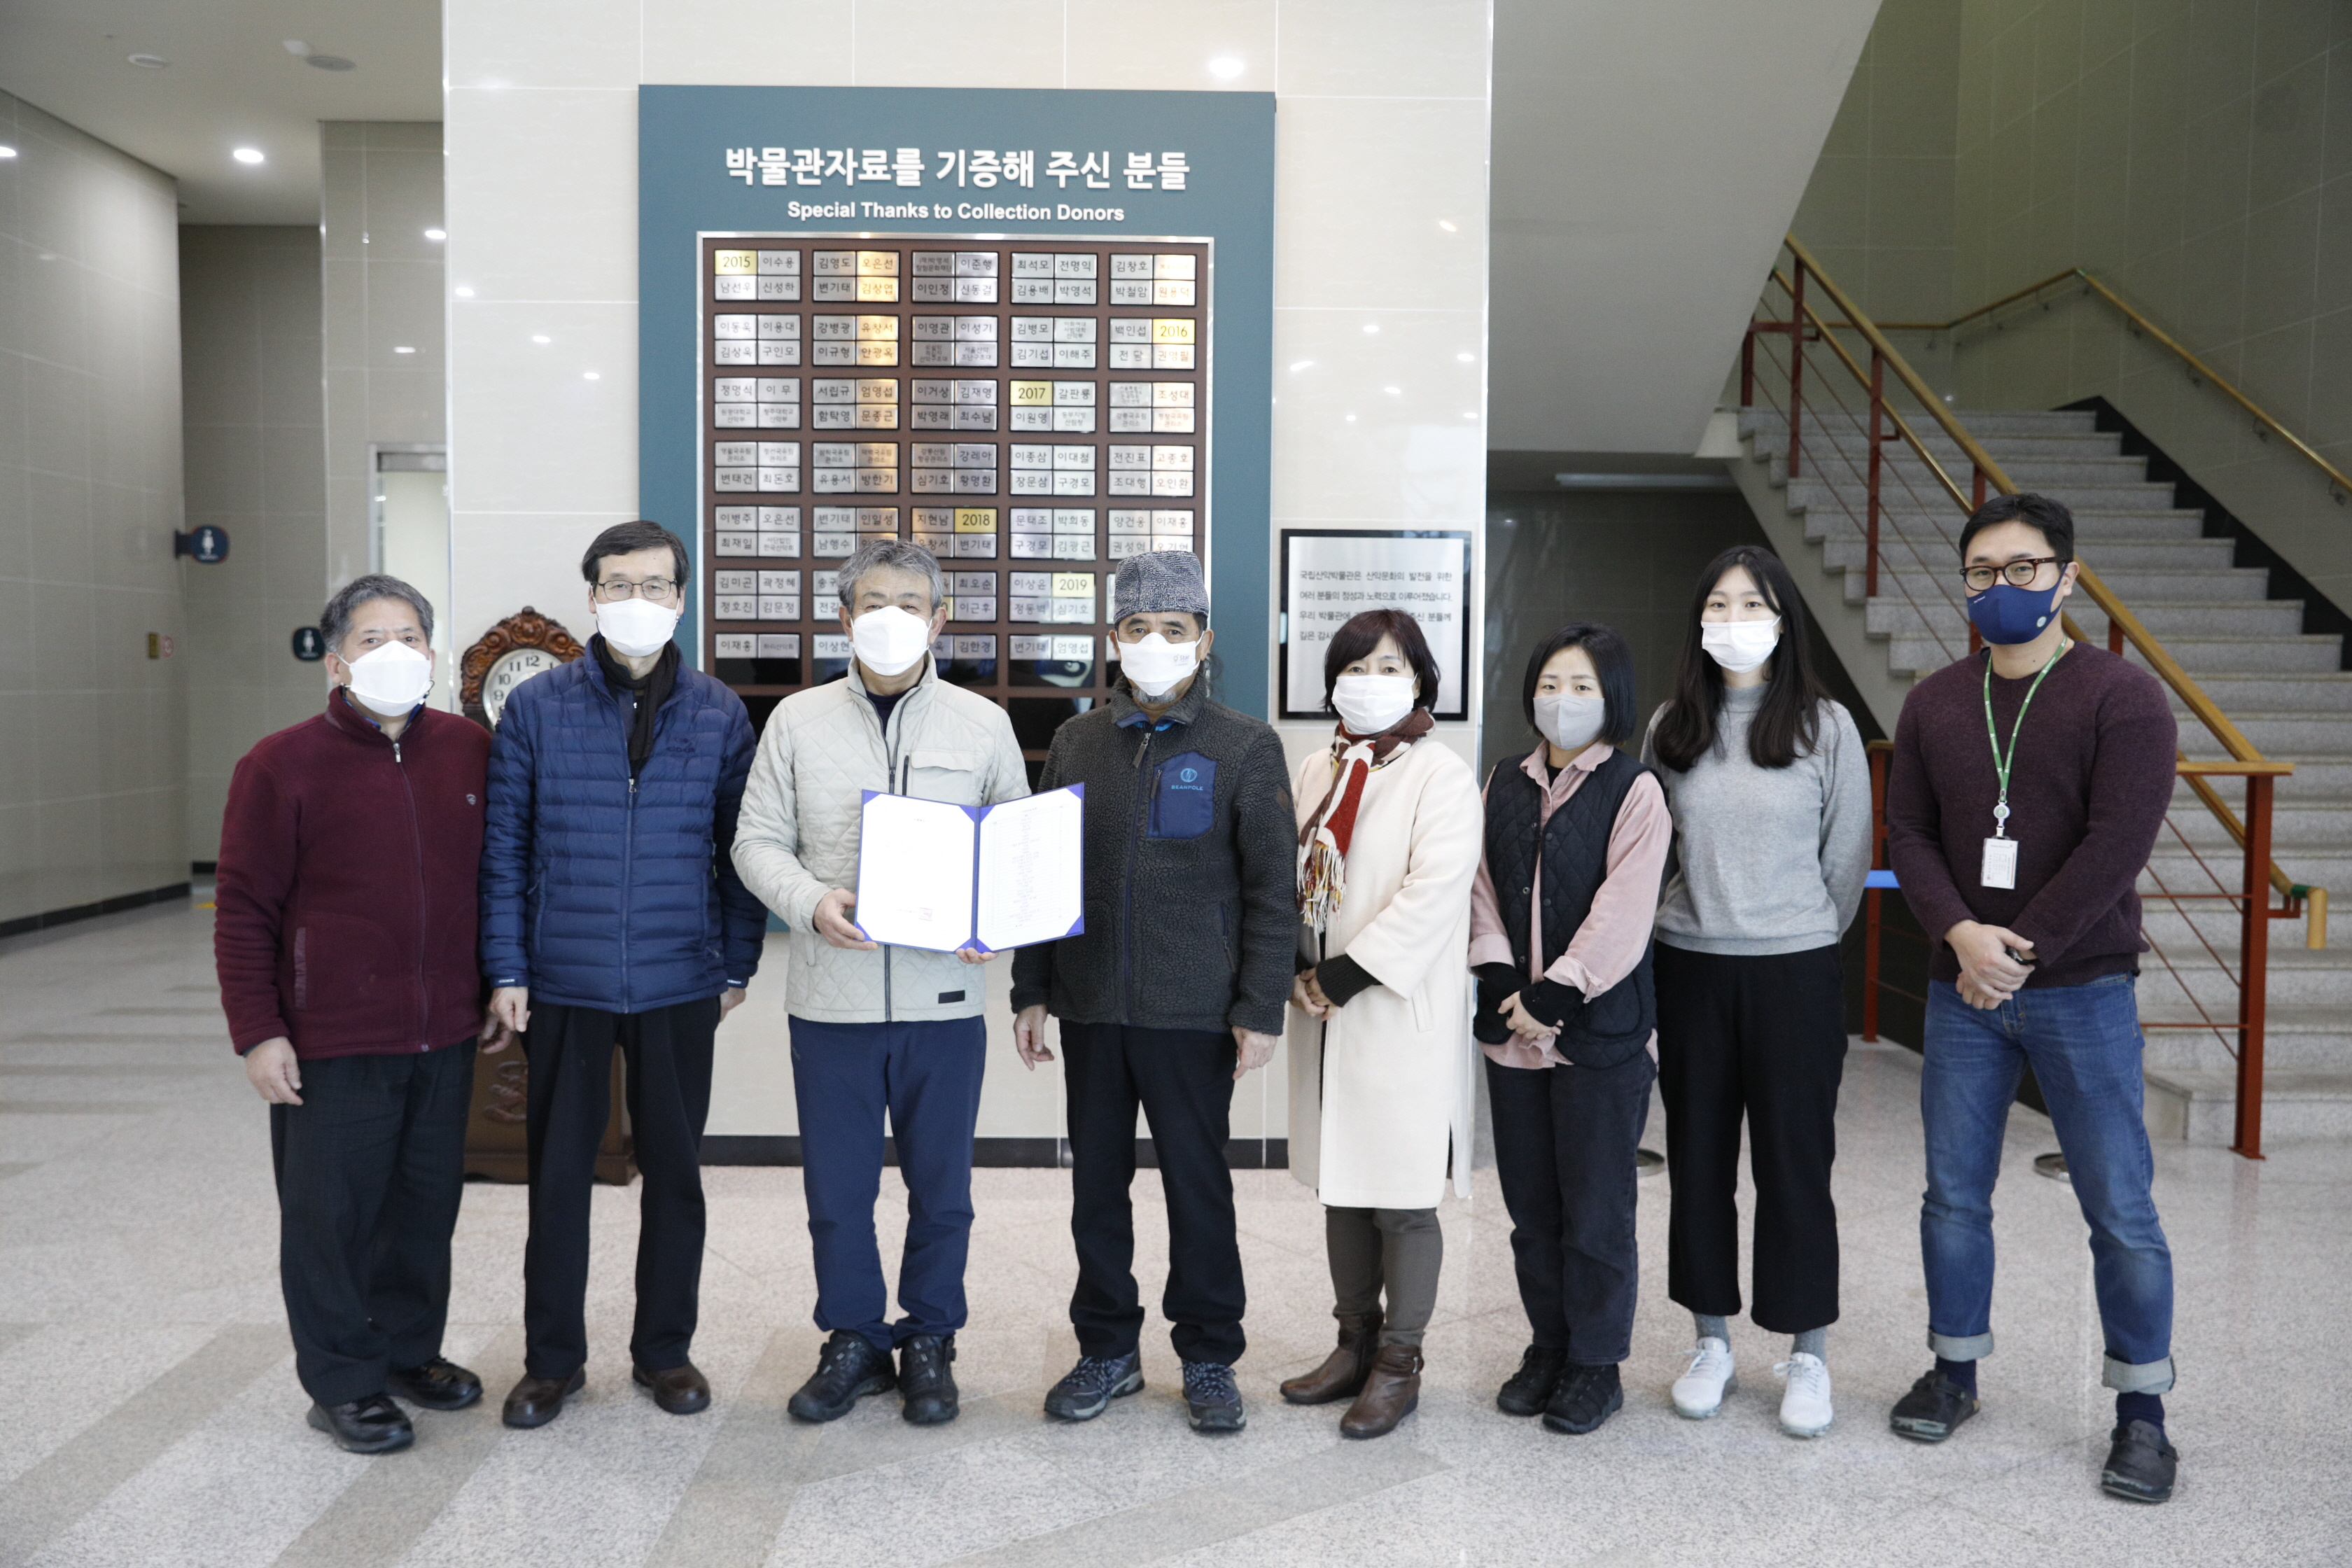 서울대학교 문리대산악회 소장유물 국립산악박물관에 기증